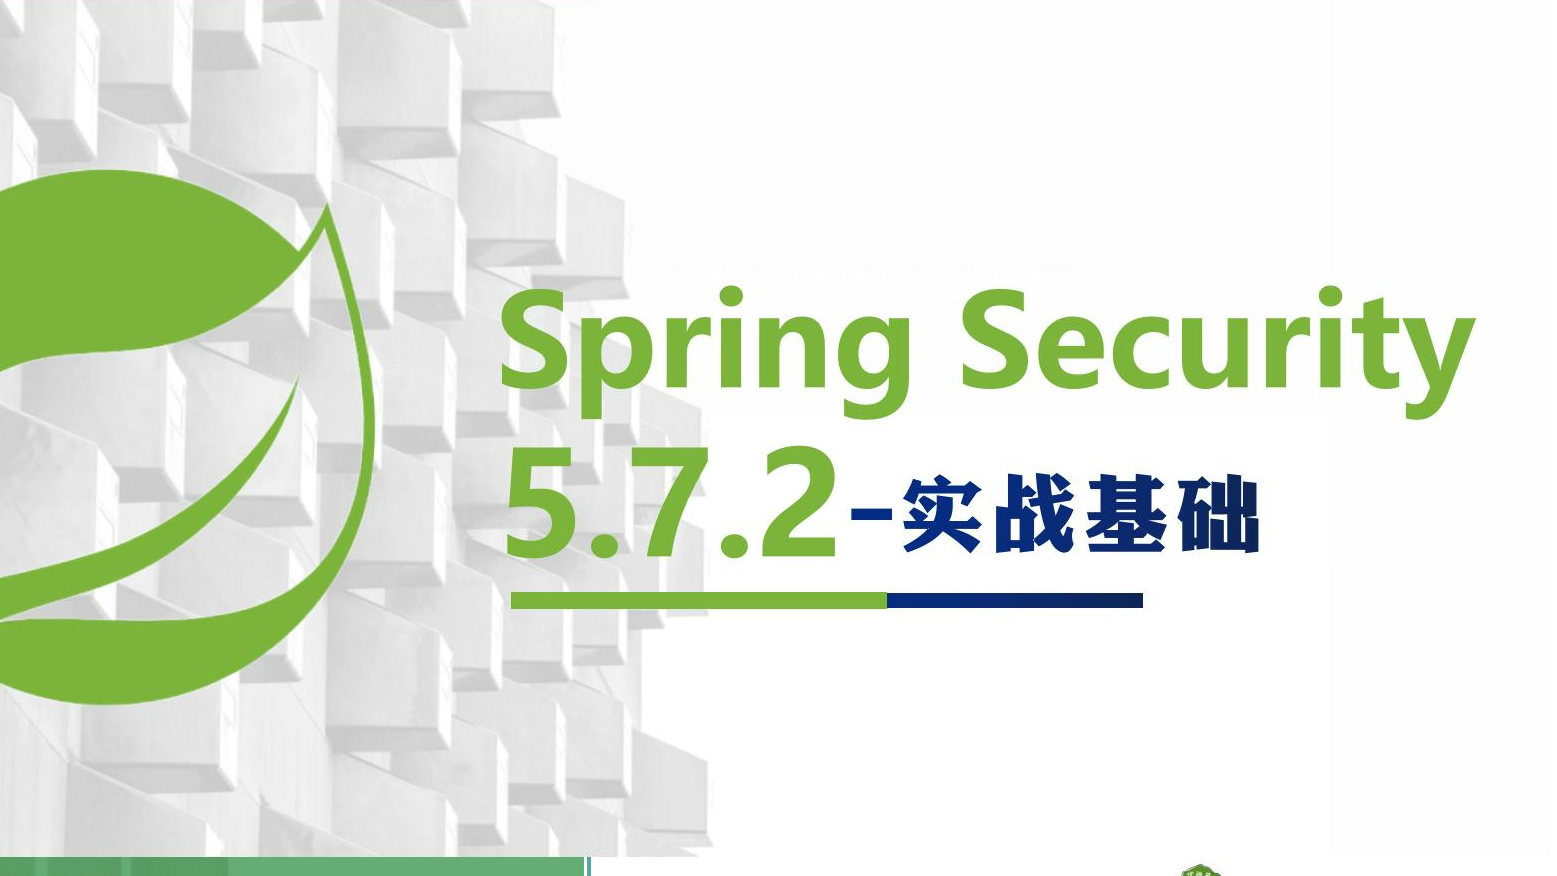  01 - 快速体验 Spring Security 5.7.2 | 权限管理基础